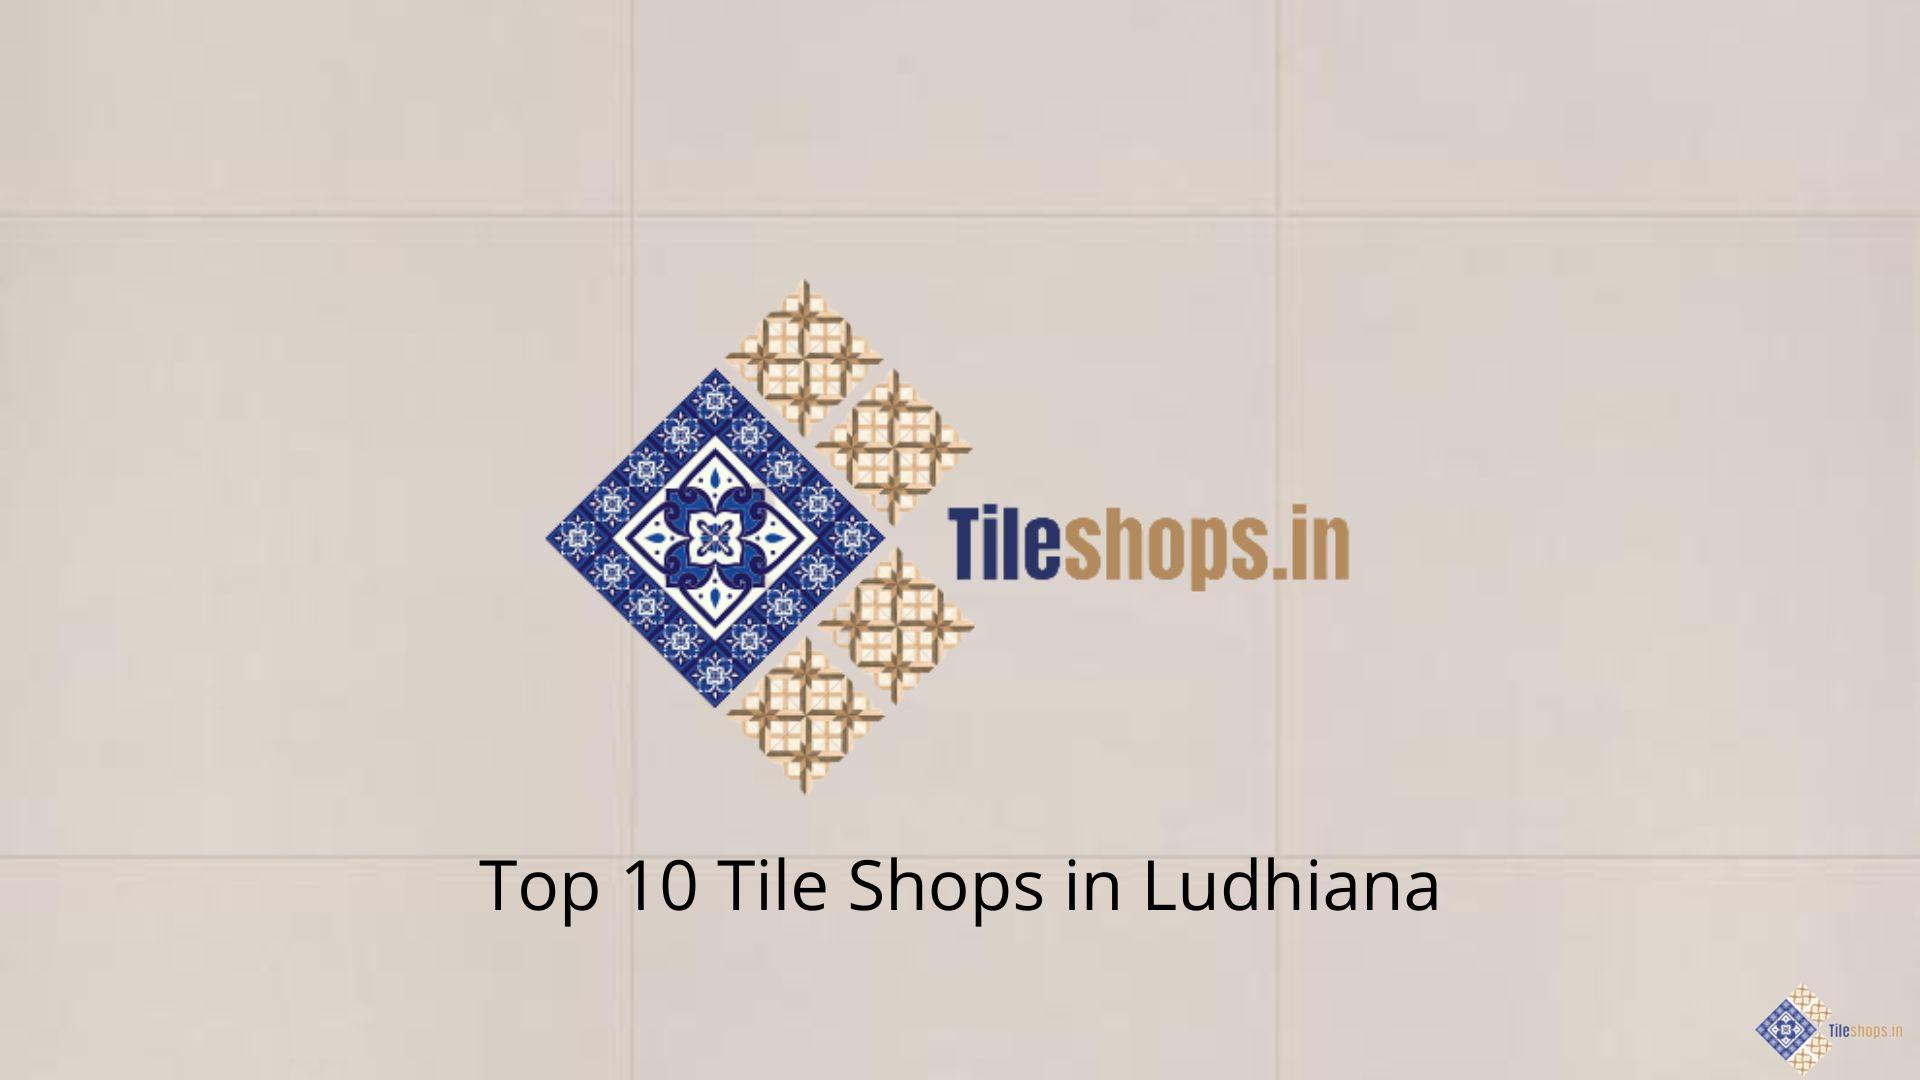 Top 10 Tile Shops in Ludhiana